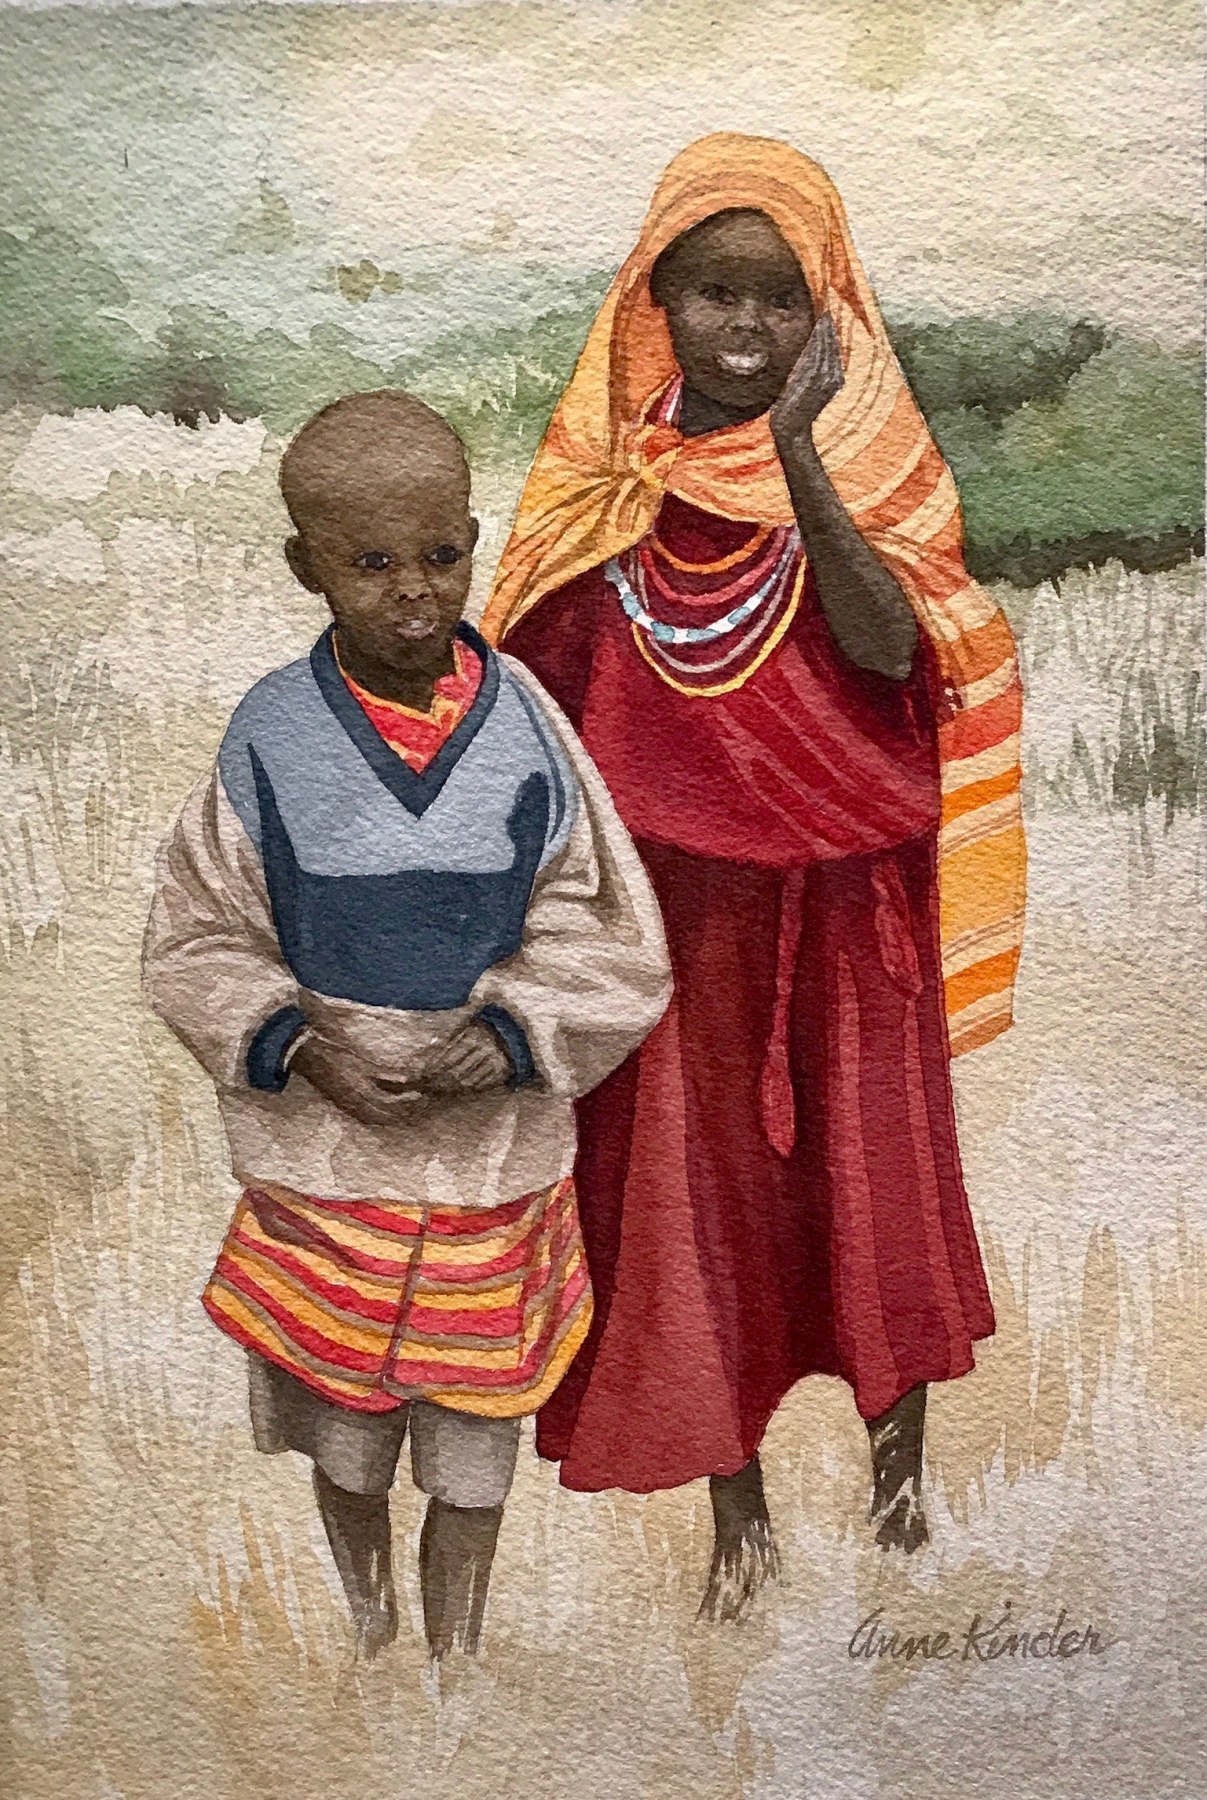 Anne Kinder, Masai Children,&nbsp;2017